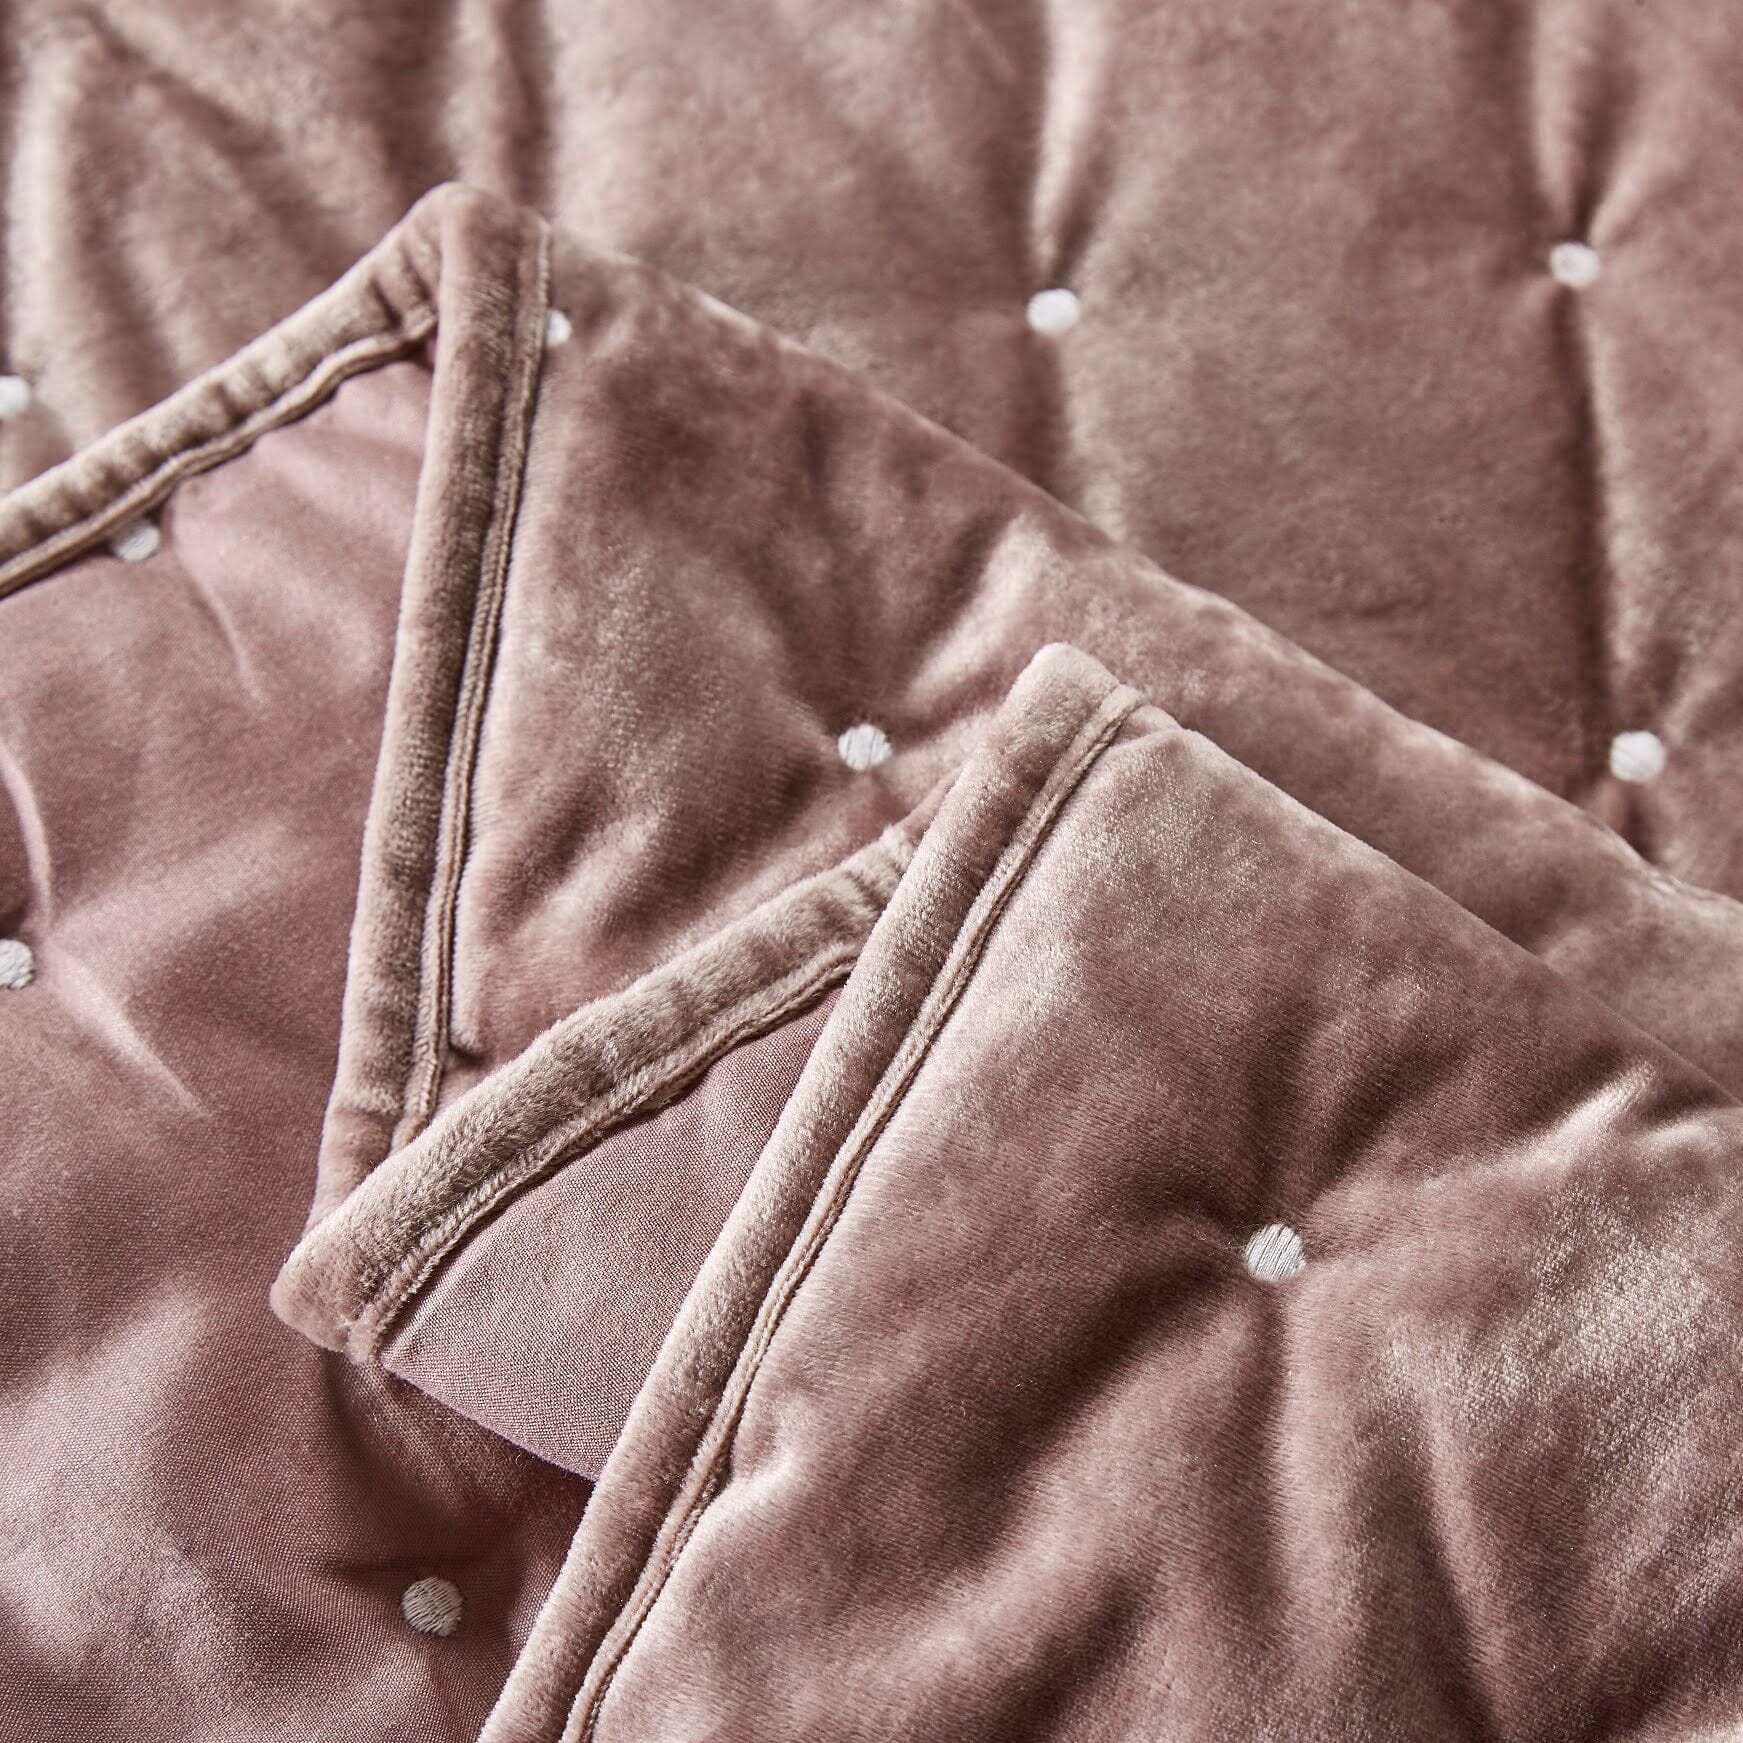 Tache Plush Dreams Purple Mauve Tufted Velvet Quilt Set (JHW-853P) - Tache Home Fashion